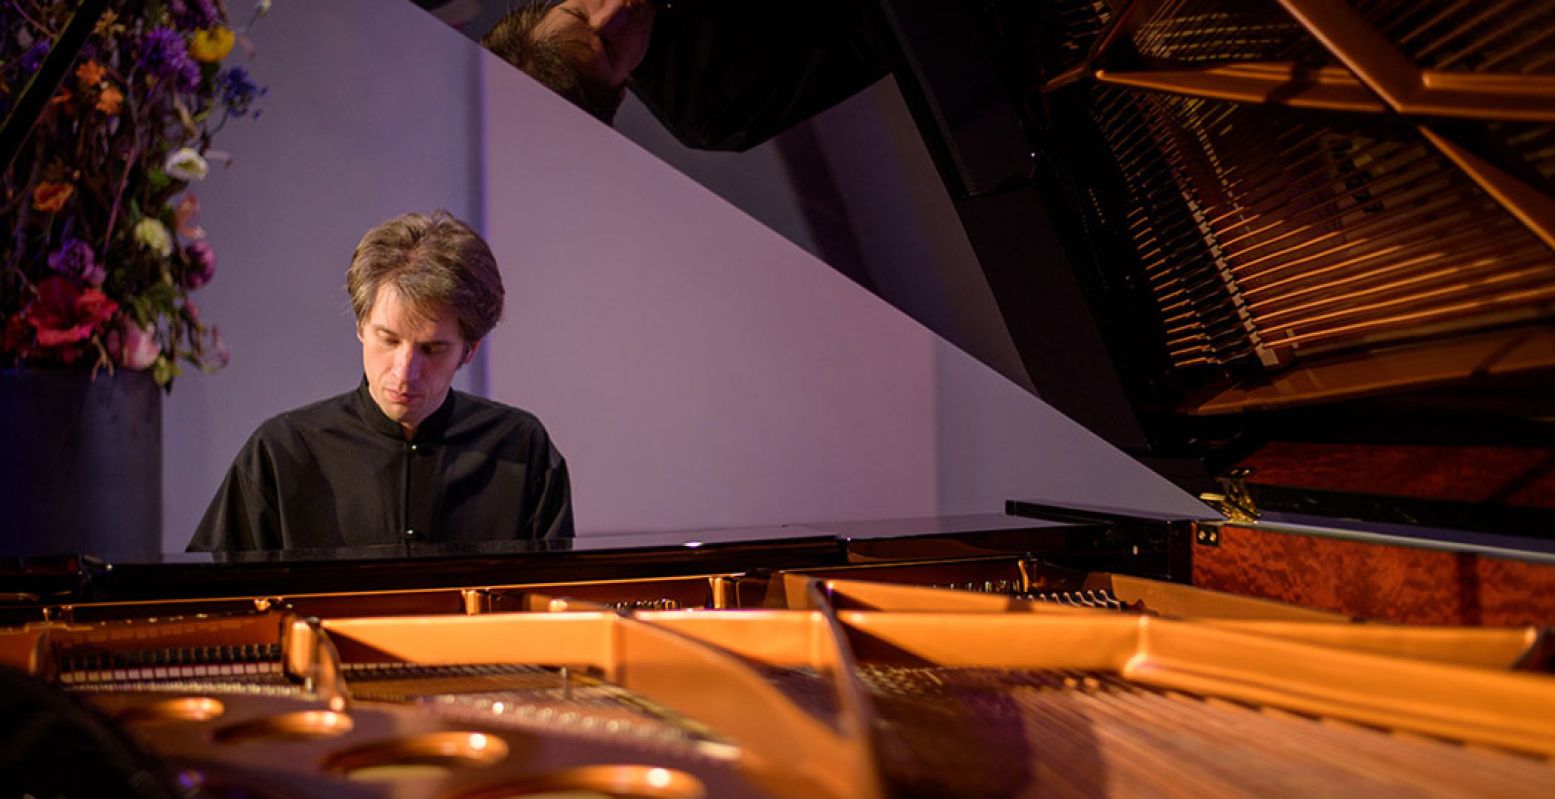 Pianist Severin von Eckardstein is dit seizoen artist in residence van de Edesche Concertzaal. Foto: Paul Sijm